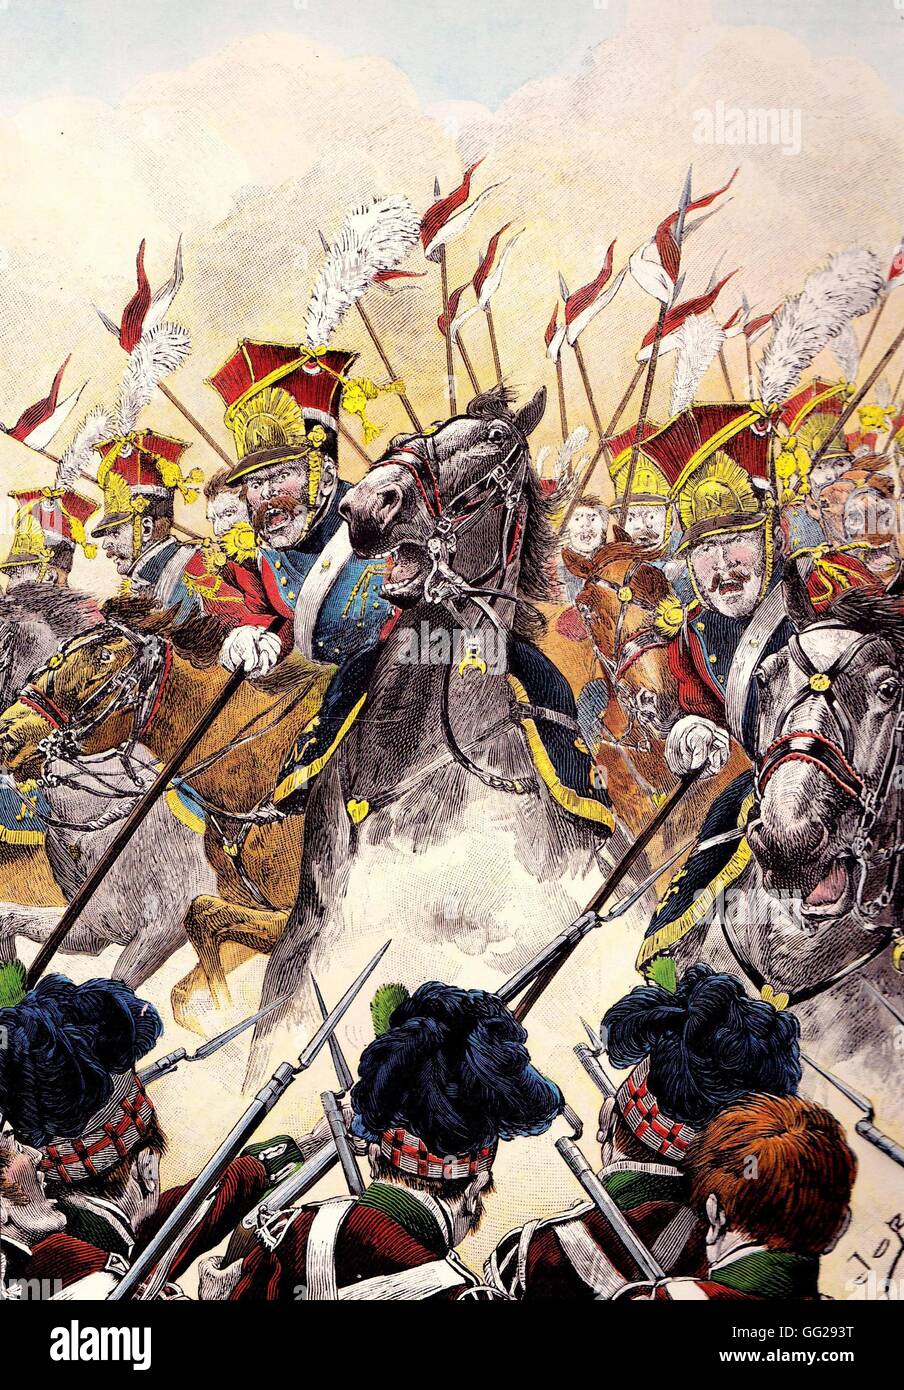 Angriff der das 2. Regiment der leichten Kavallerie Lanzenreiter der kaiserlichen Garde in der Schlacht von Waterloo am 18. Juni 1815. Privatsammlung Stockfoto